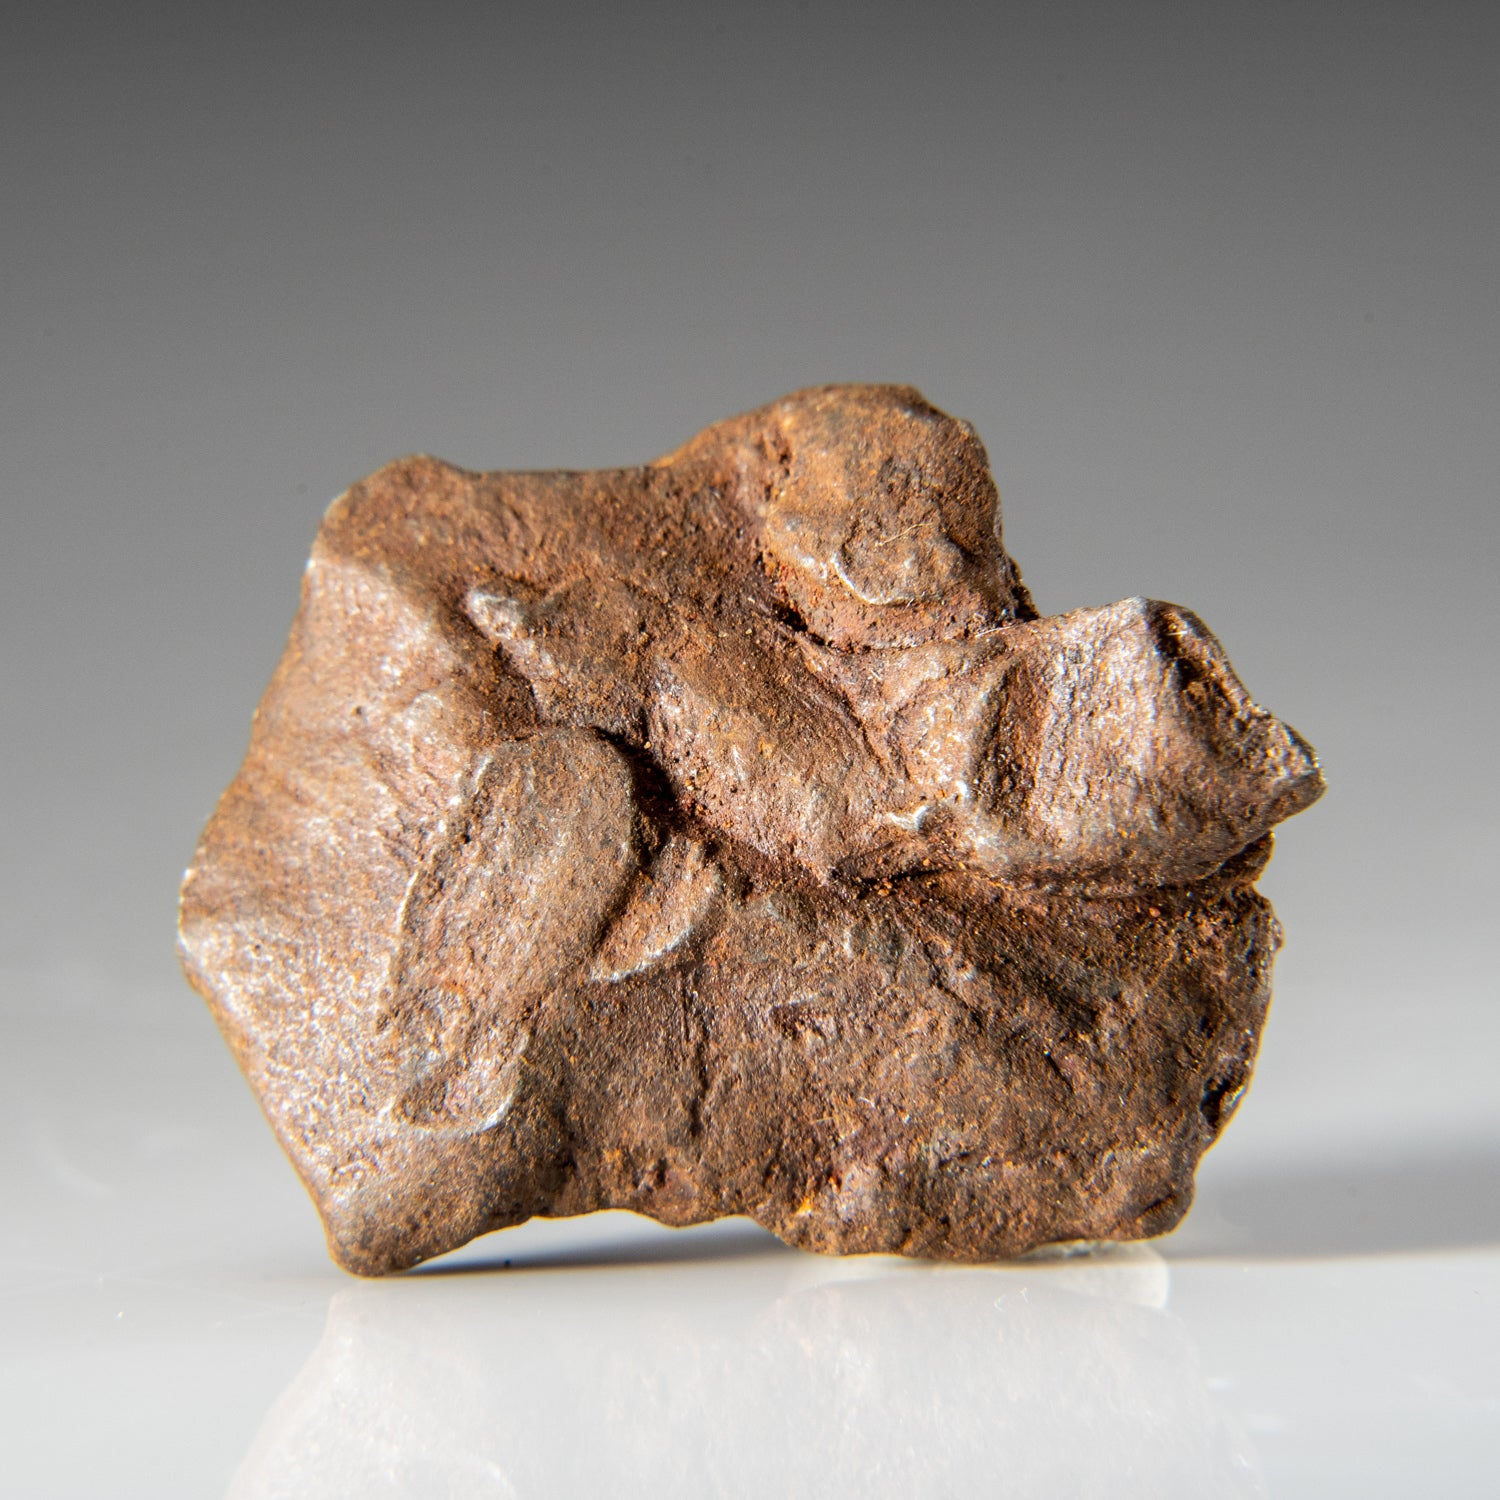 Genuine Gebel Kamil Meteorite from Egypt (24.4 grams)